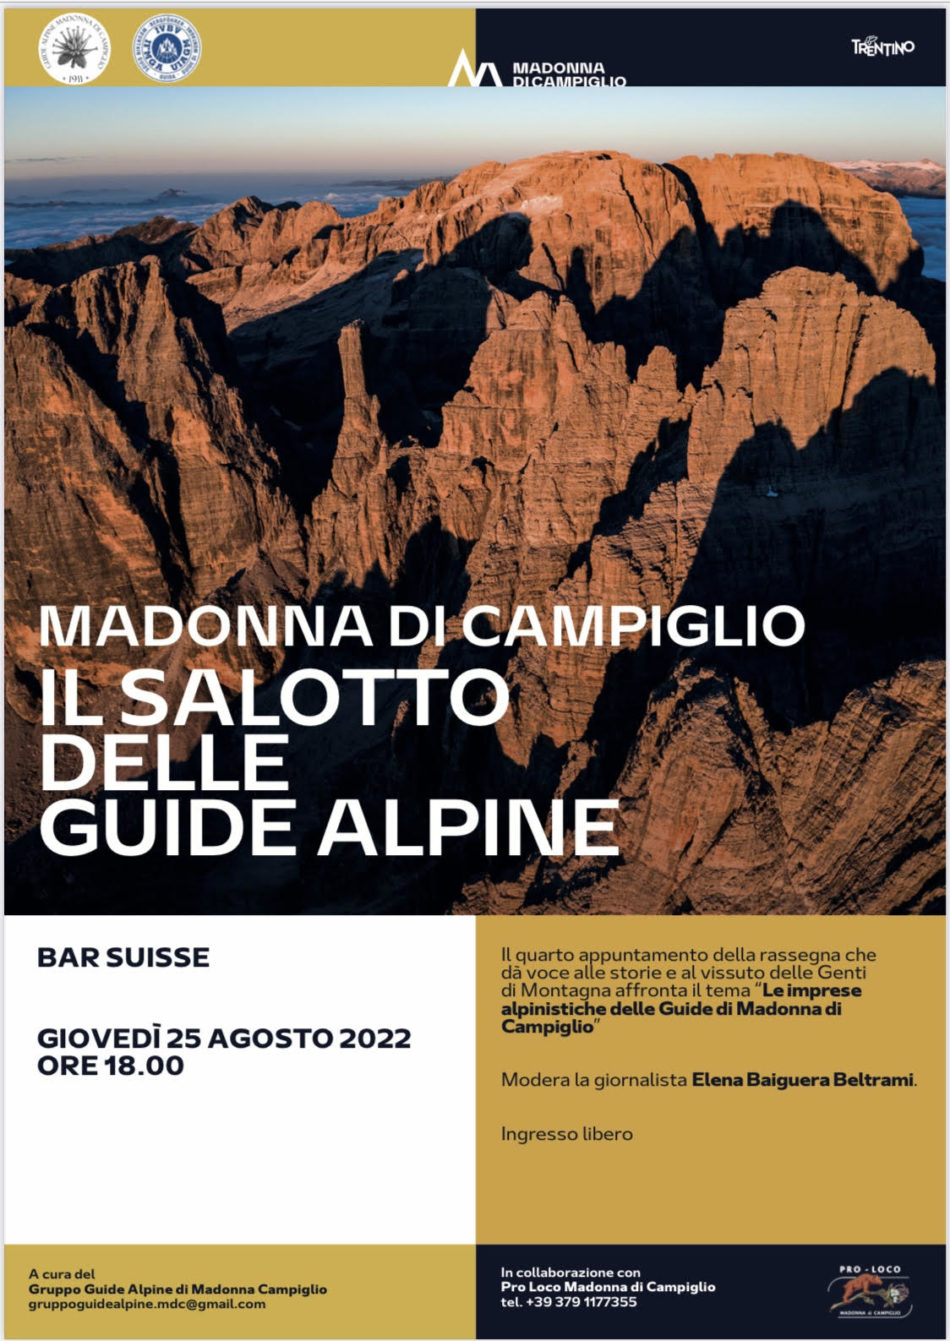 25 agosto ore 18.00 – Campiglio: Le imprese alpinistiche delle Guide Alpine di Madonna di Campiglio